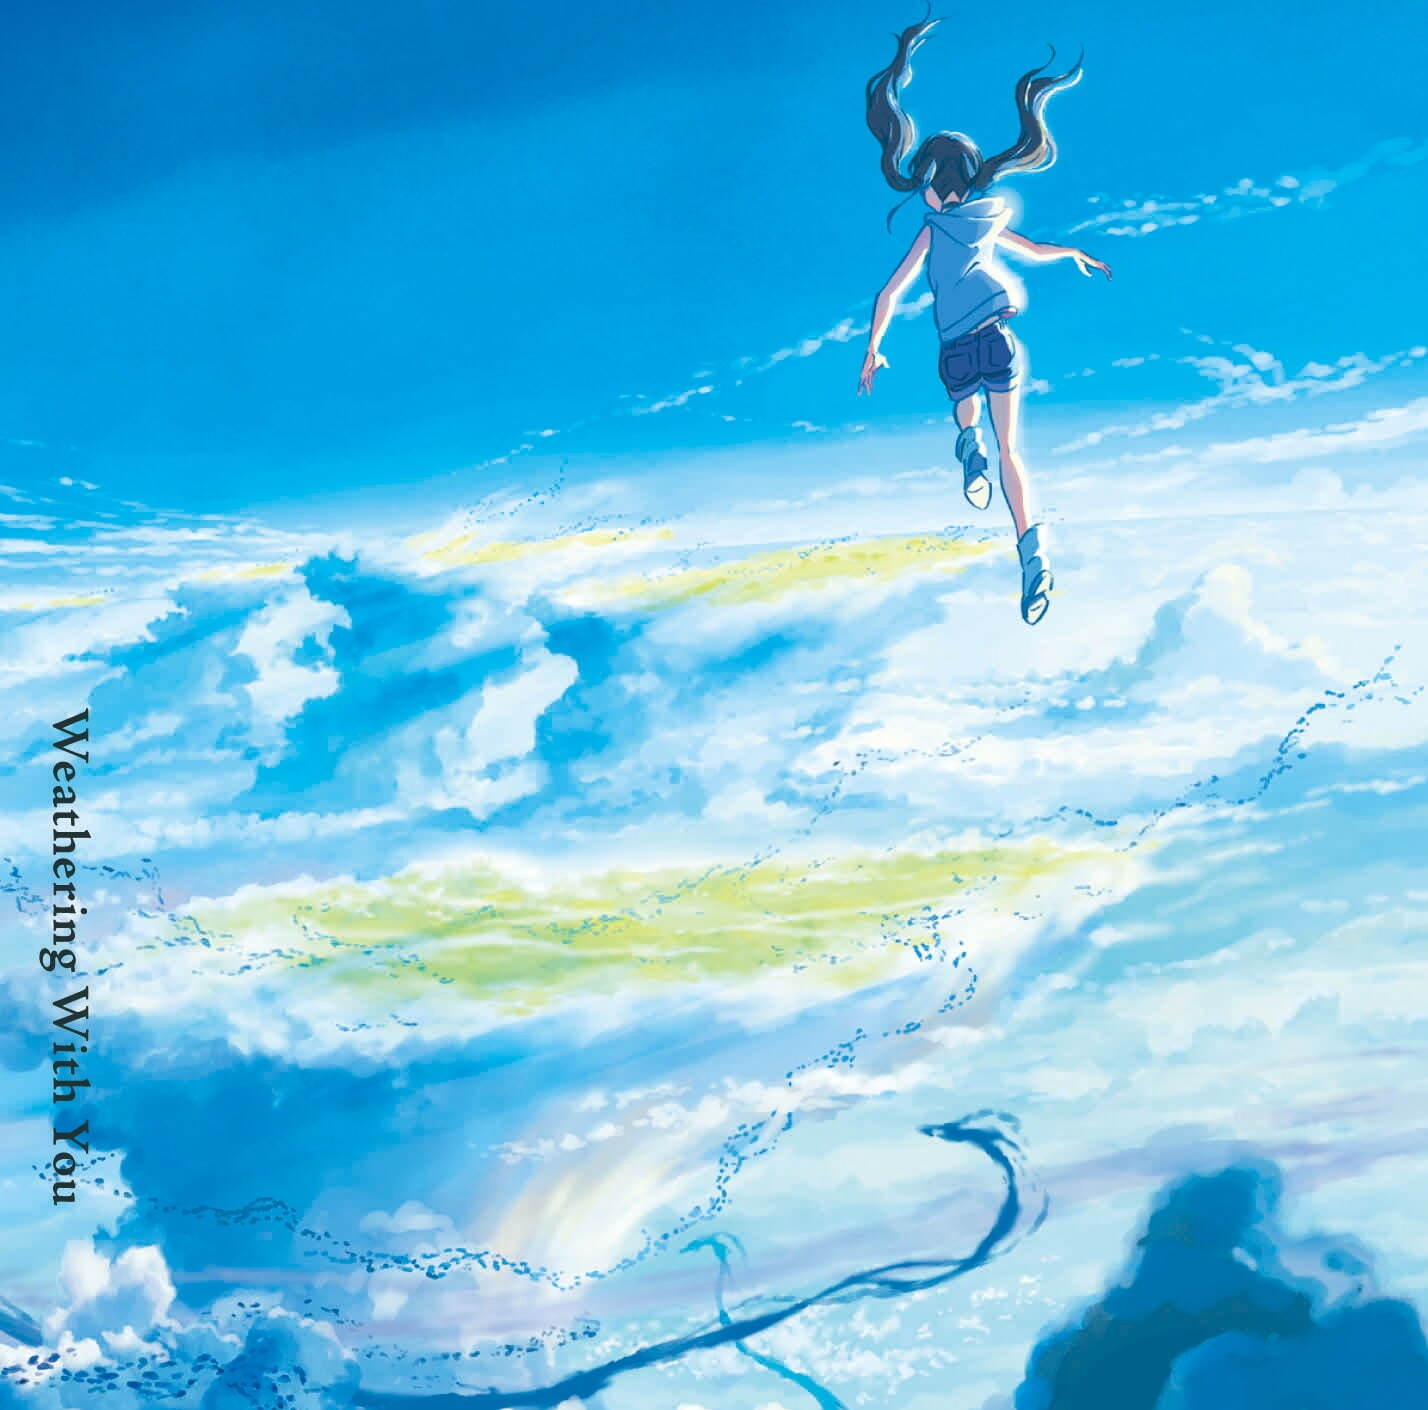 『天気の子』アナログ盤 5,280円